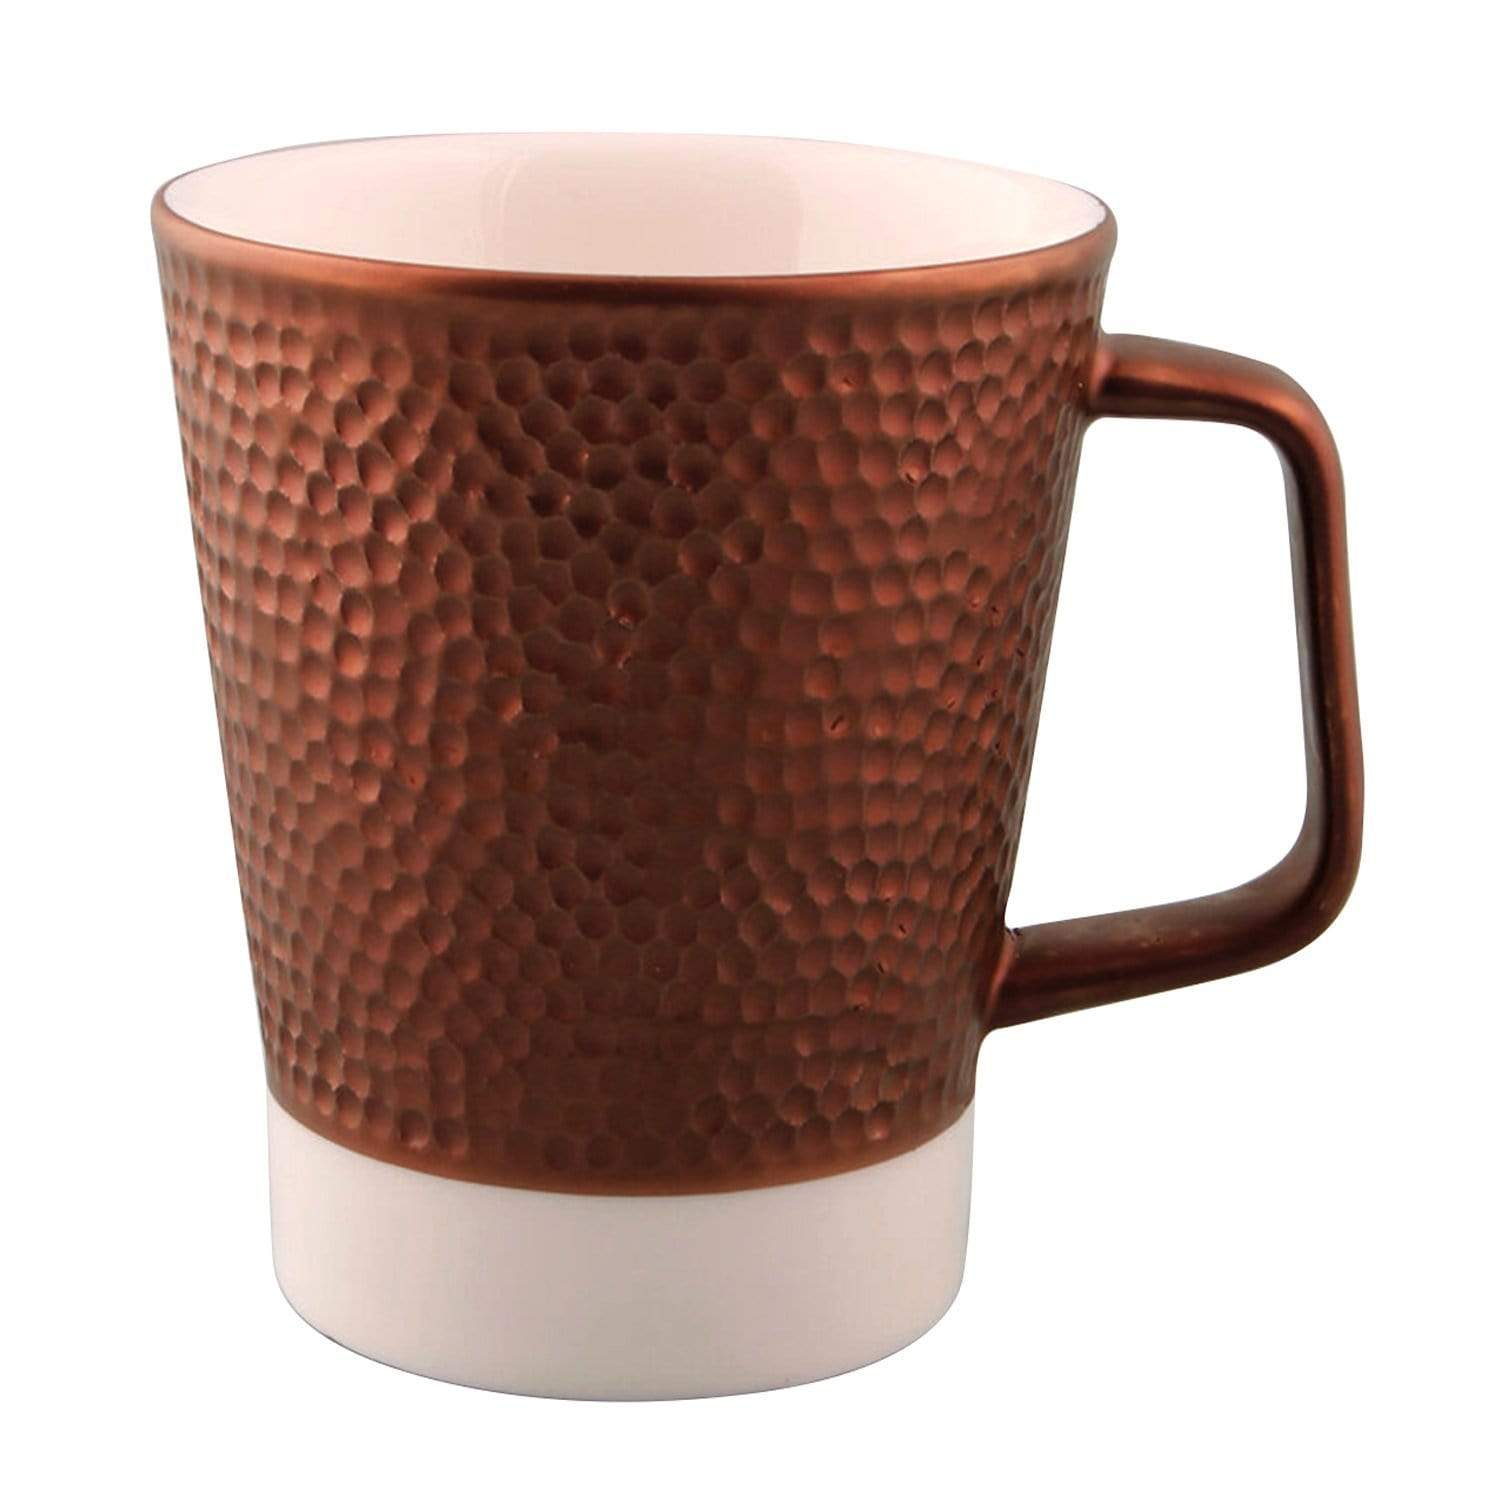 بورلاند Porselen تراث النحاس القهوة القدح - 335 مل - 04ALM004355 - Jashanmal الرئيسية